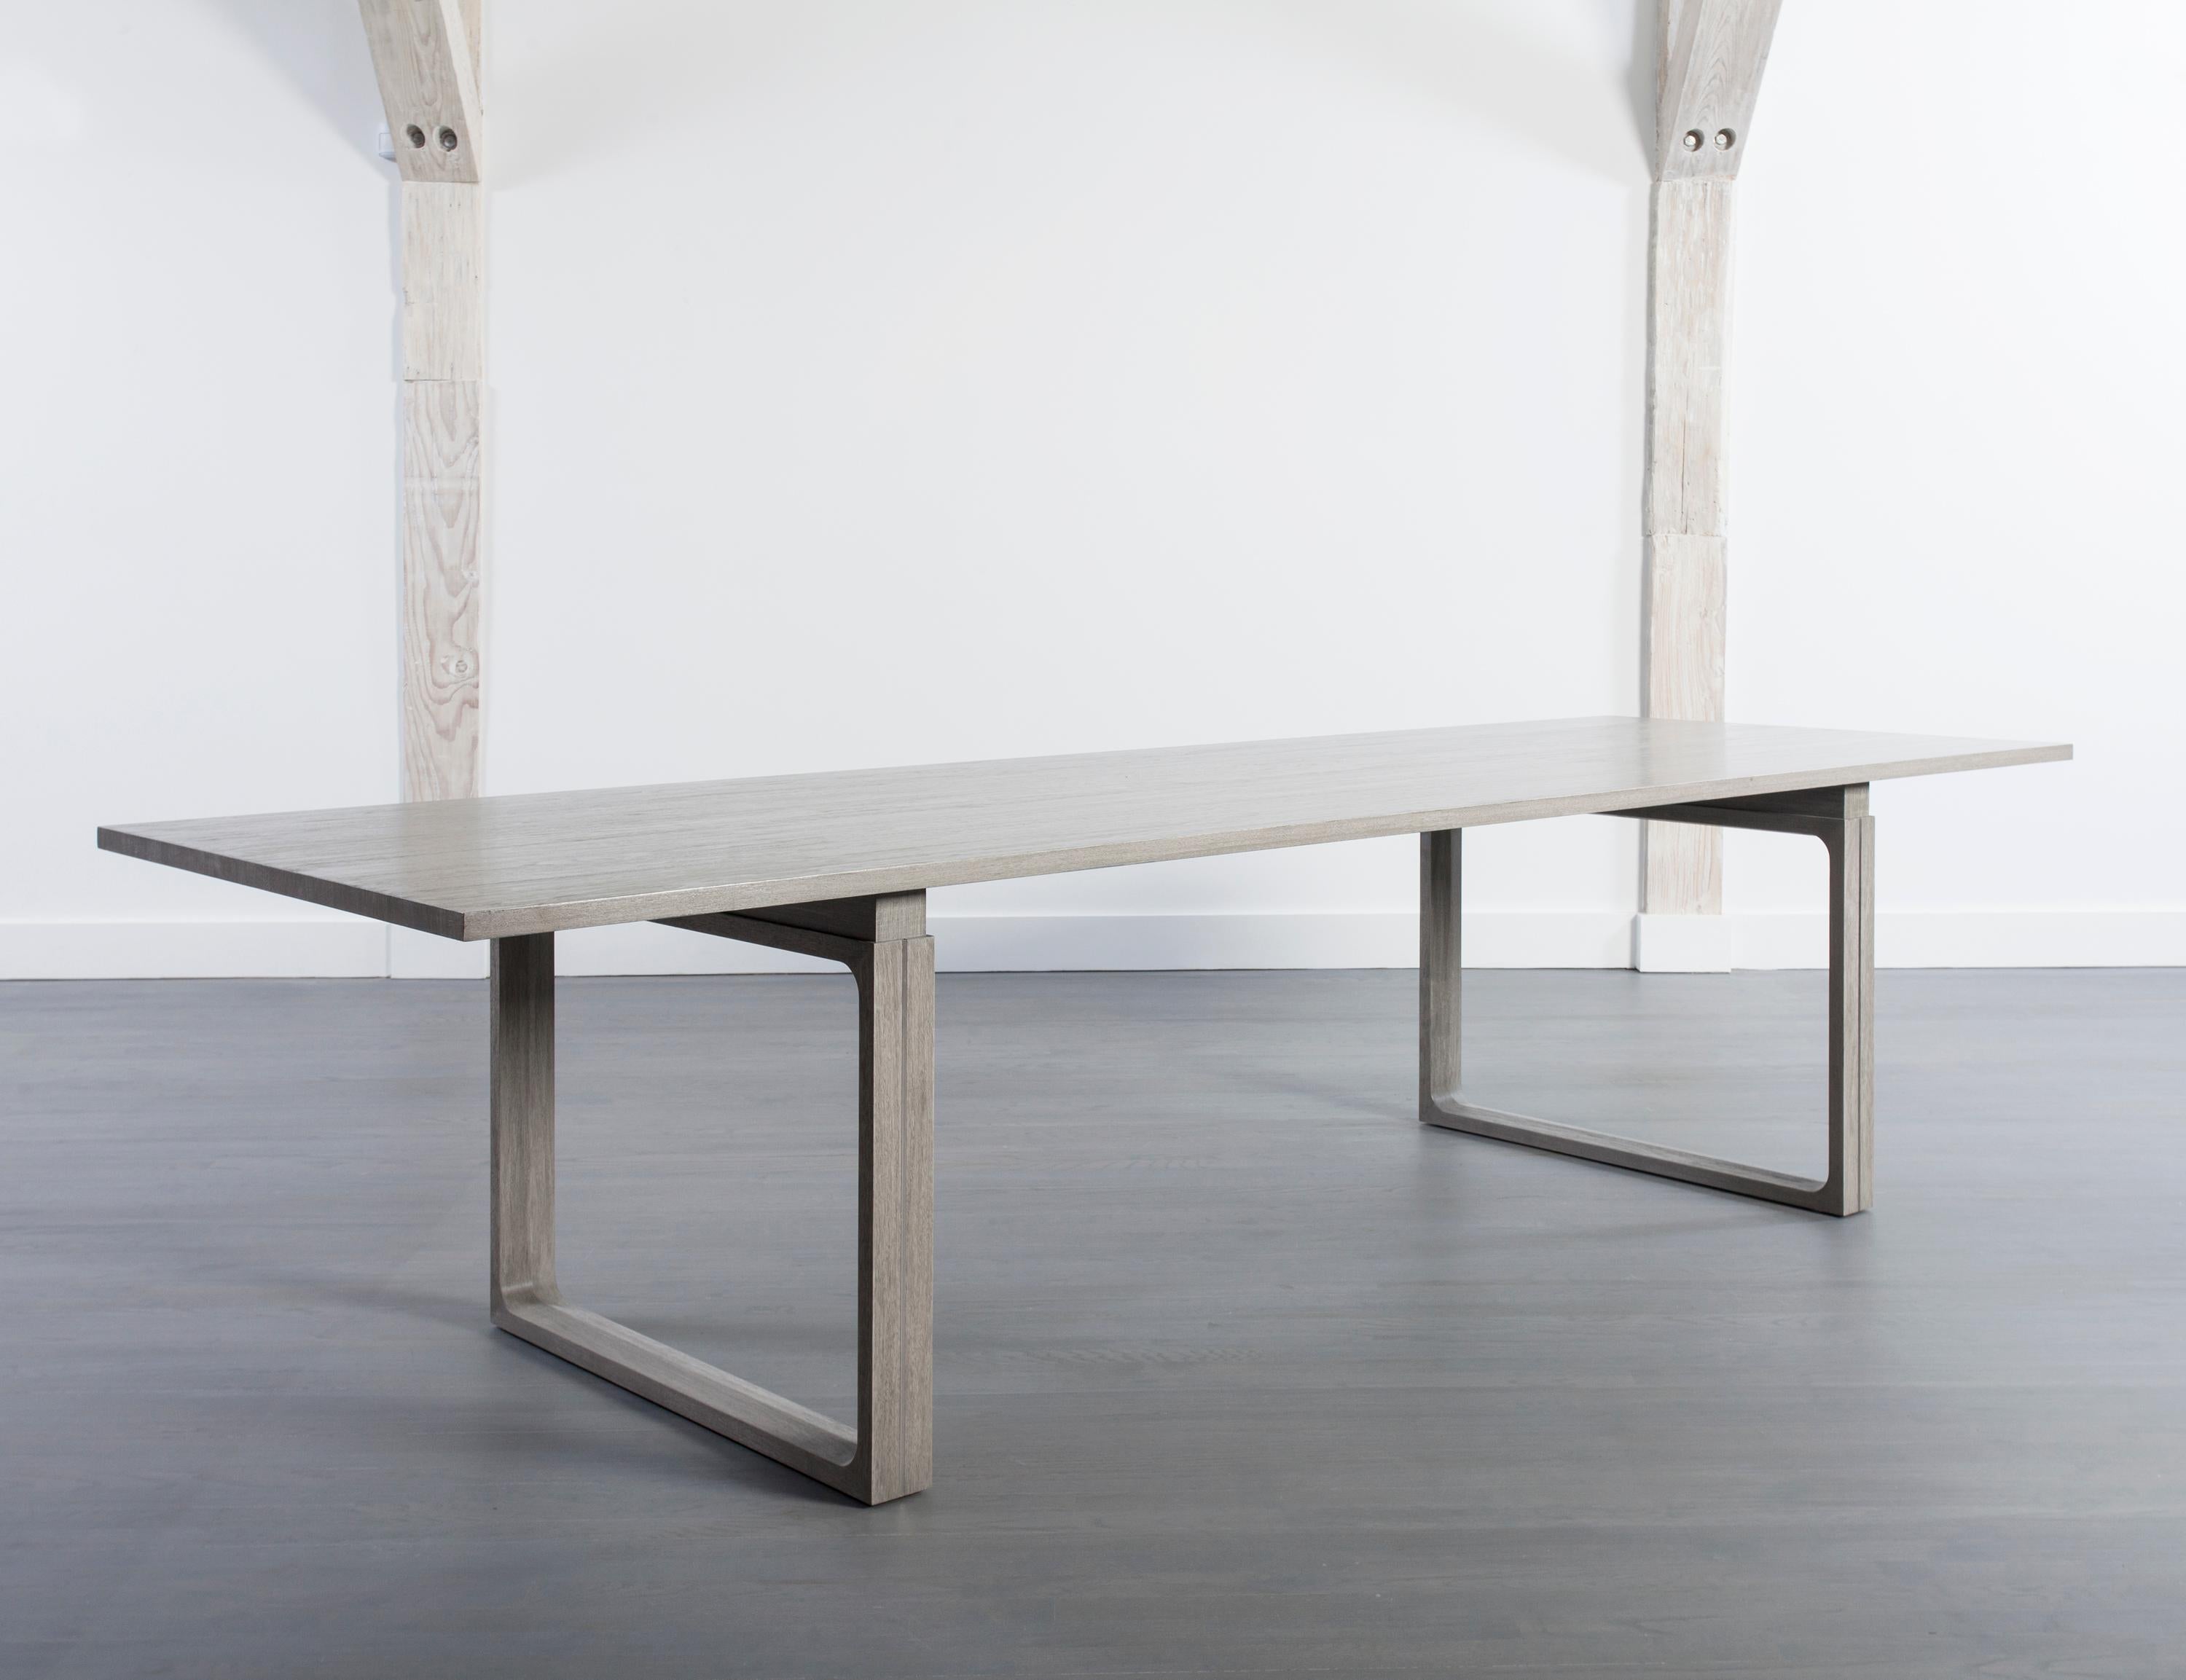 Les lignes épurées de cette élégante table de salle à manger moderne en noyer permettent à son grain de bois de prendre le centre de la scène. teintée d'un gris tourterelle, et reposant sur une paire de pieds sculpturaux carrés ouverts, cette table